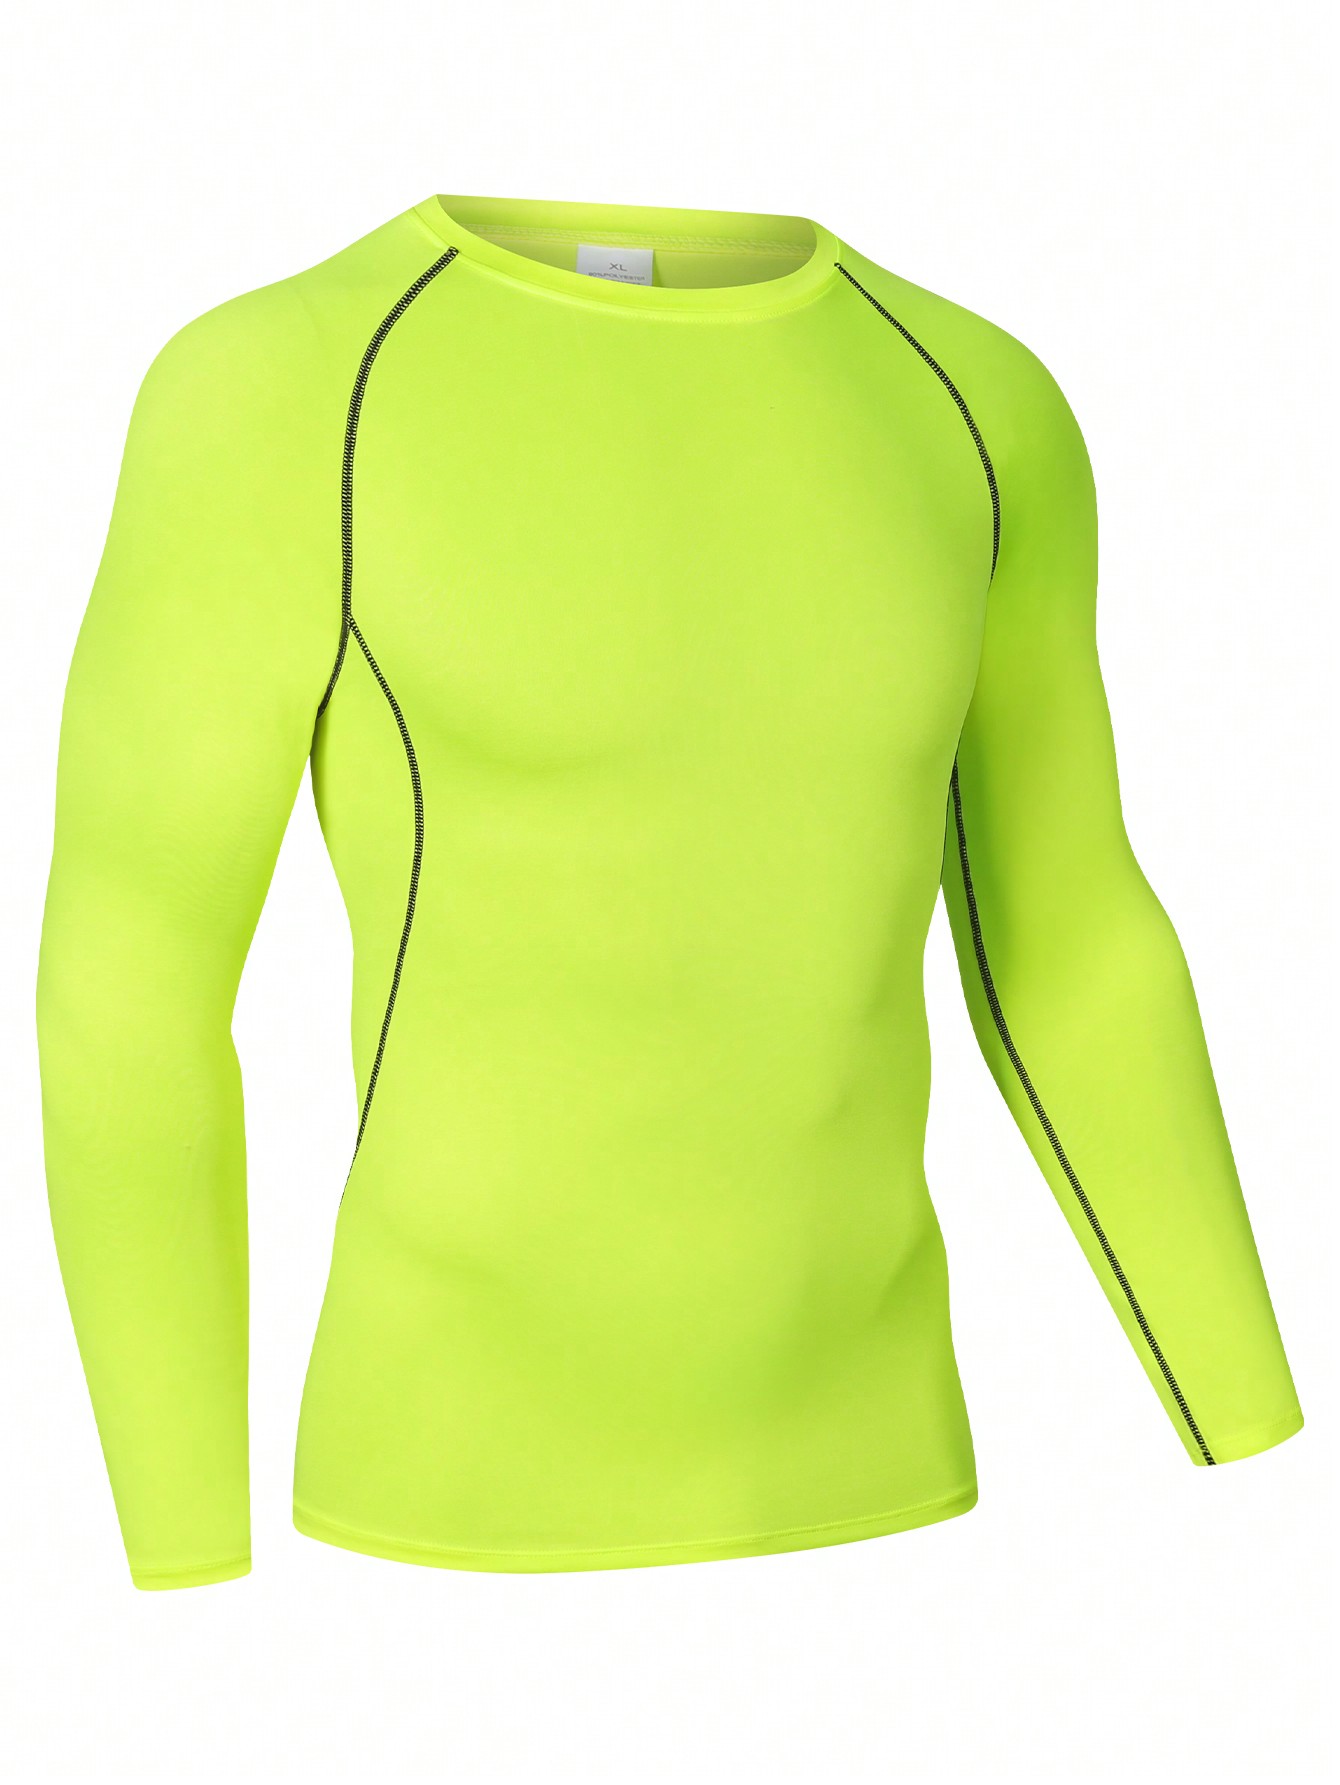 Мужская эластичная компрессионная рубашка для фитнеса с длинными рукавами, зеленый normov бесшовный женский костюм для фитнеса сексуальная контрастная цветная быстросохнущая спортивная одежда для тренировок спортивная оде